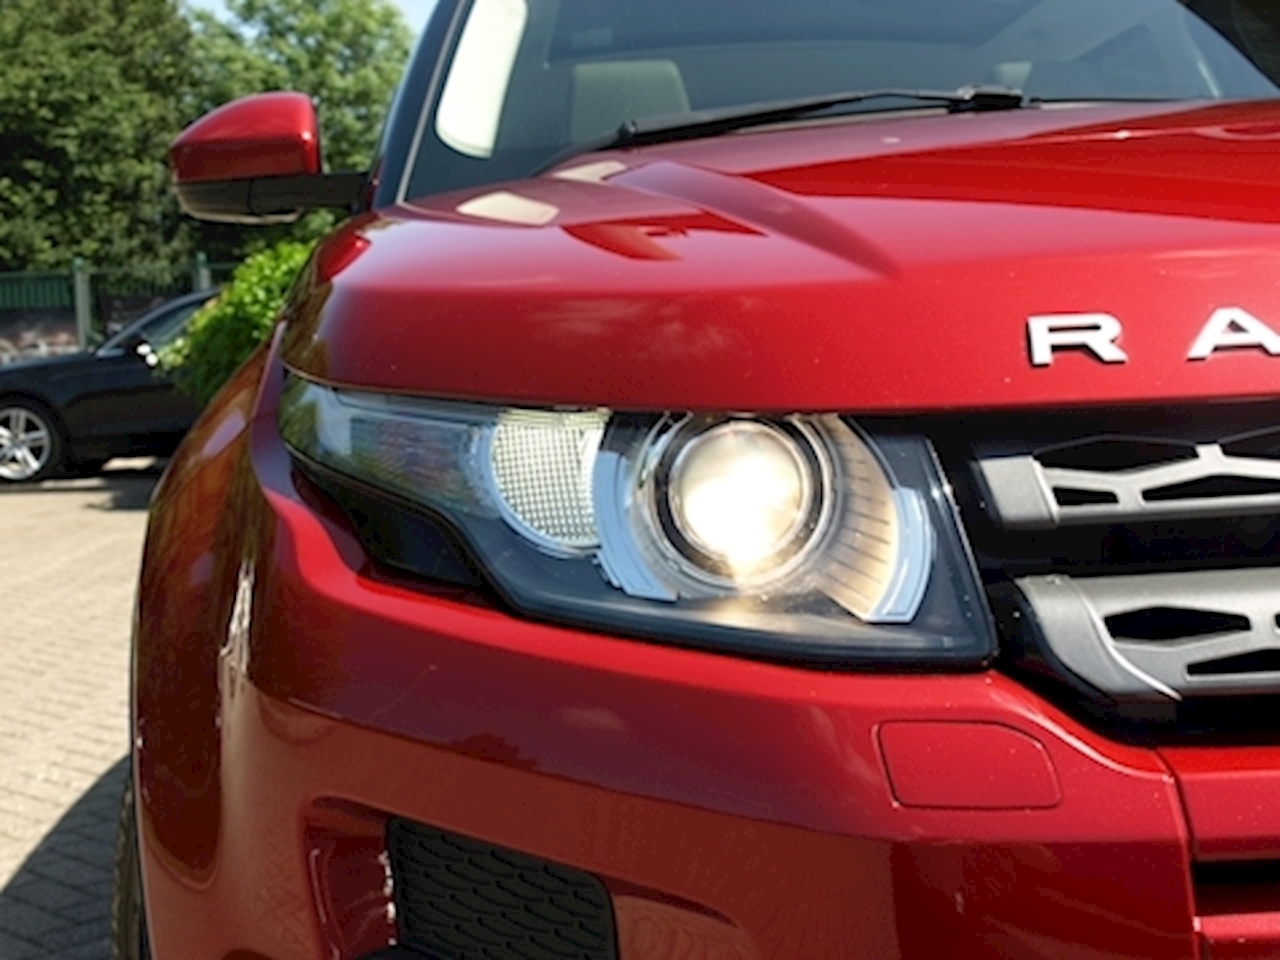 Range Rover Evoque Sd4 Pure Tech Estate 2.2 Automatic Diesel